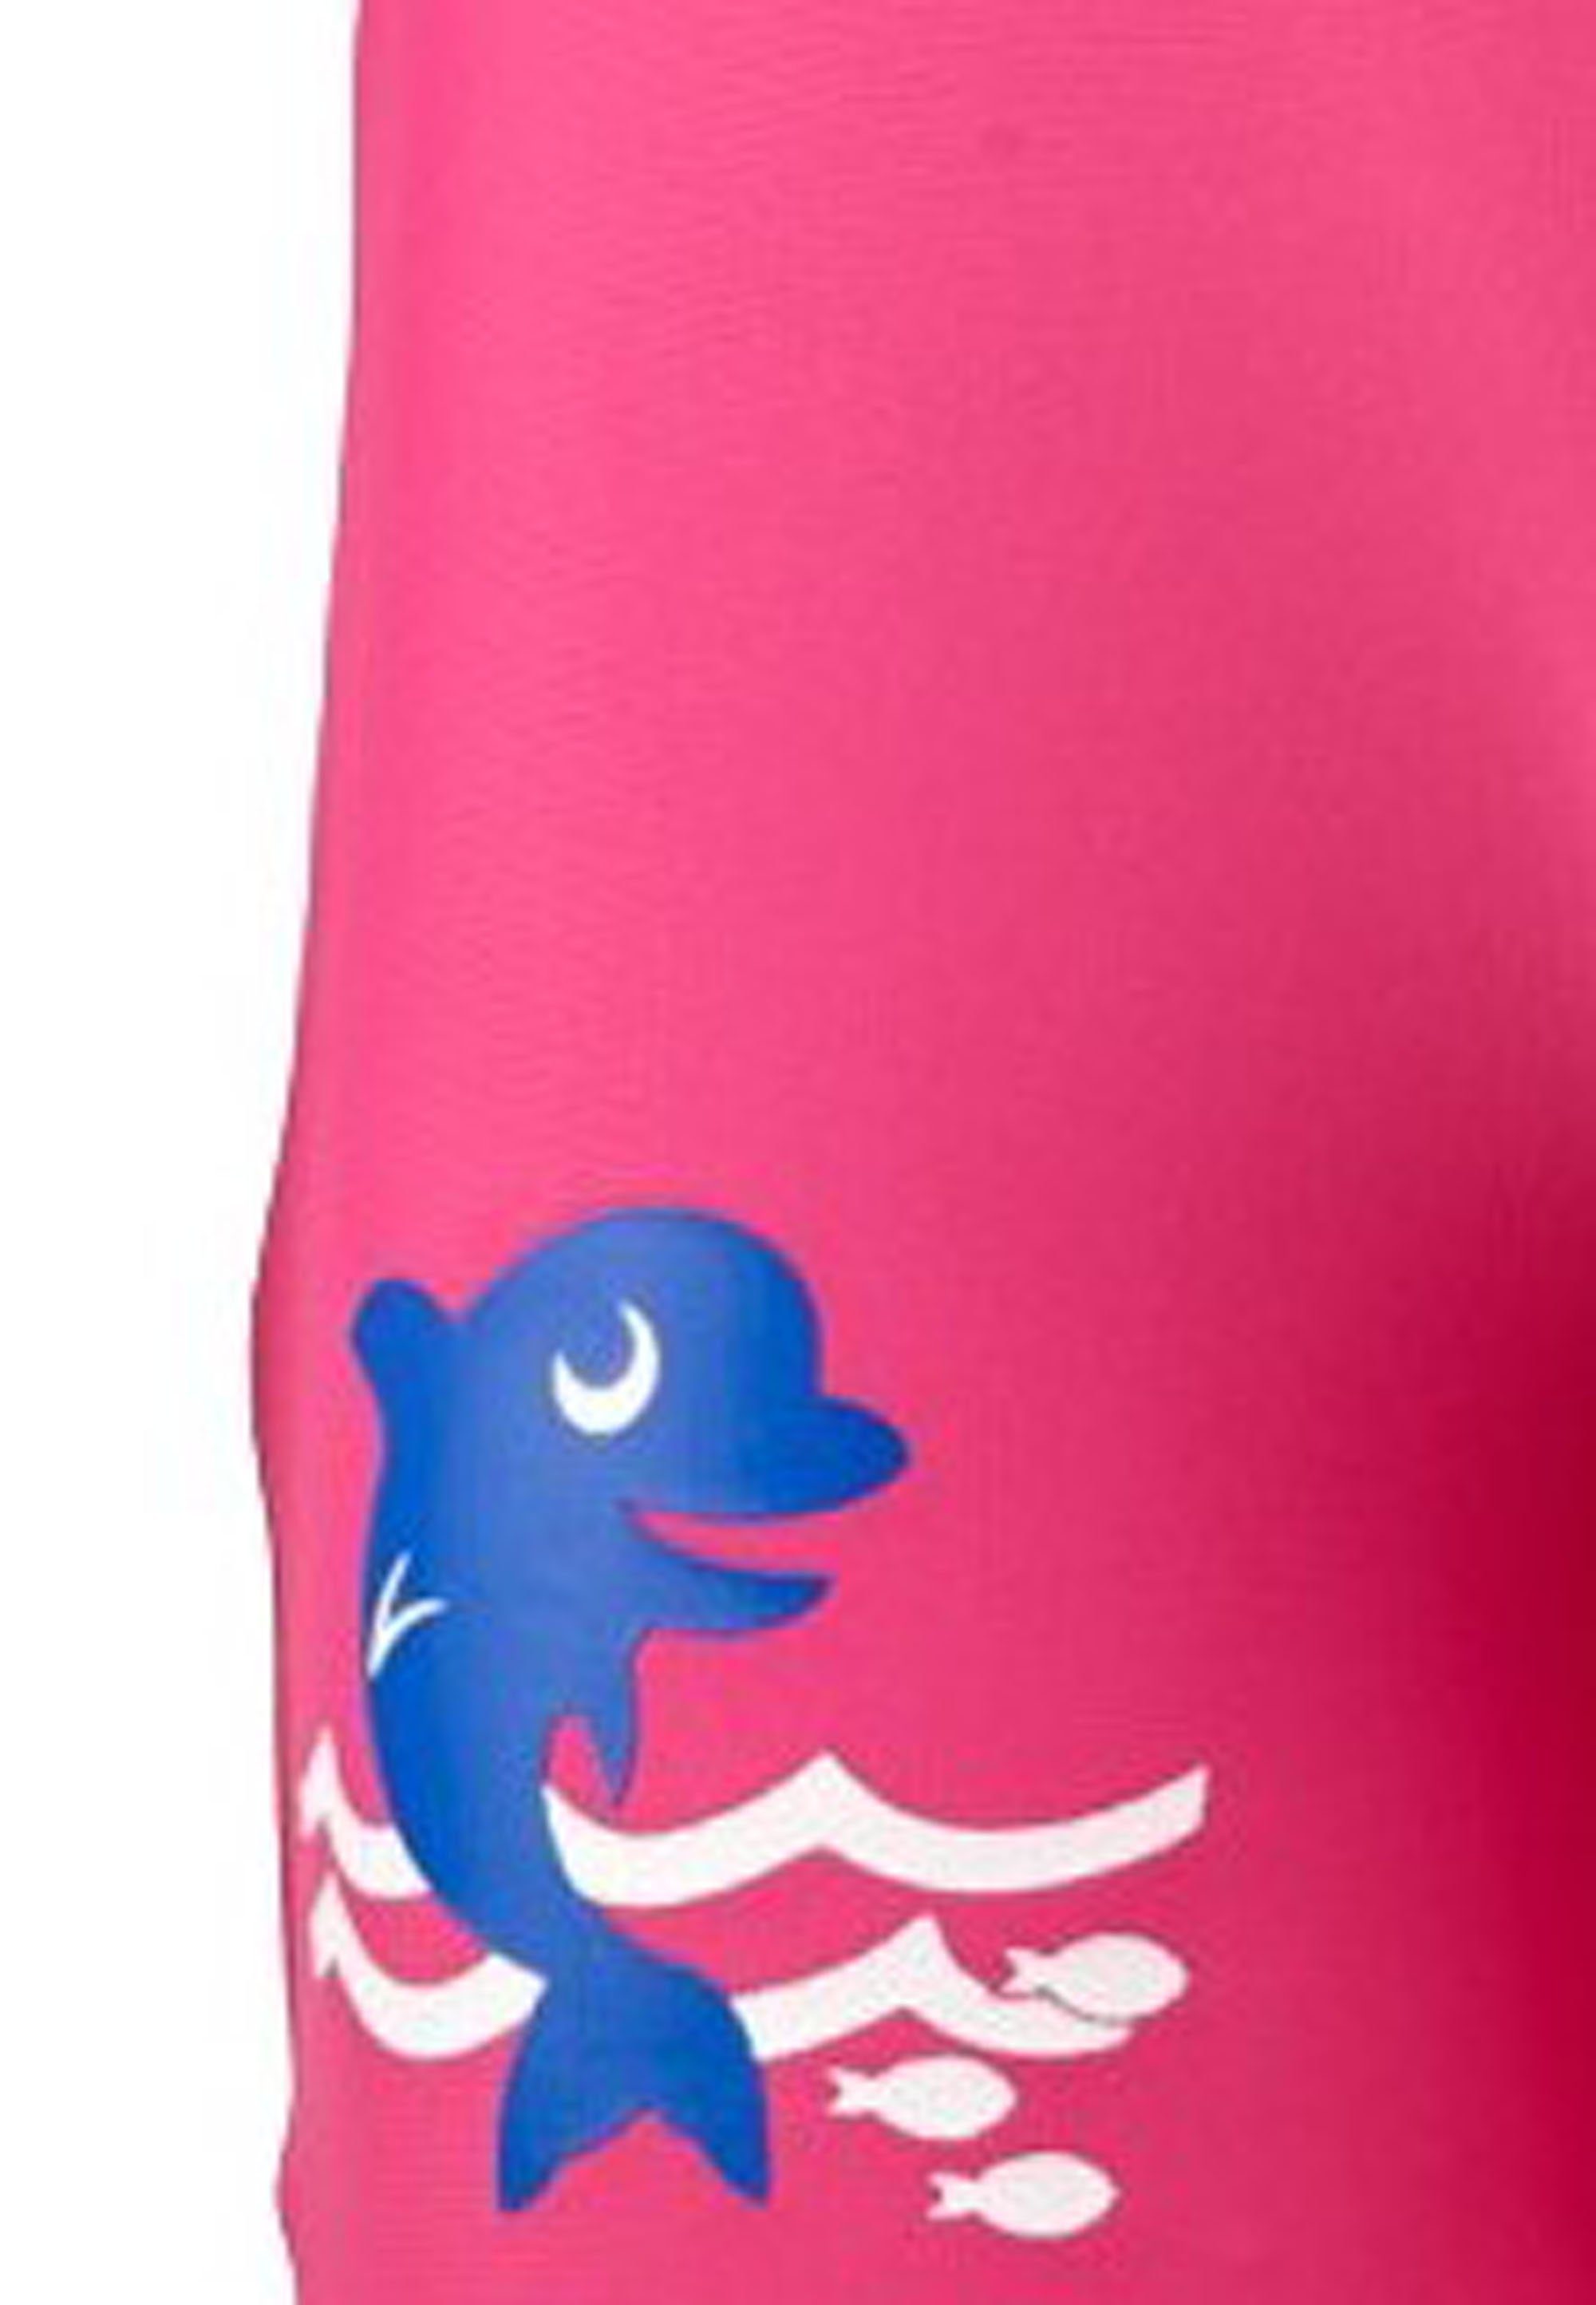 schnell UV50+ Schutzanzug pink perfekter Beermann trocknend Beco BECO-SEALIFE® (1-St) ultraweich und Sonnenschutz Einteiler Badeanzug